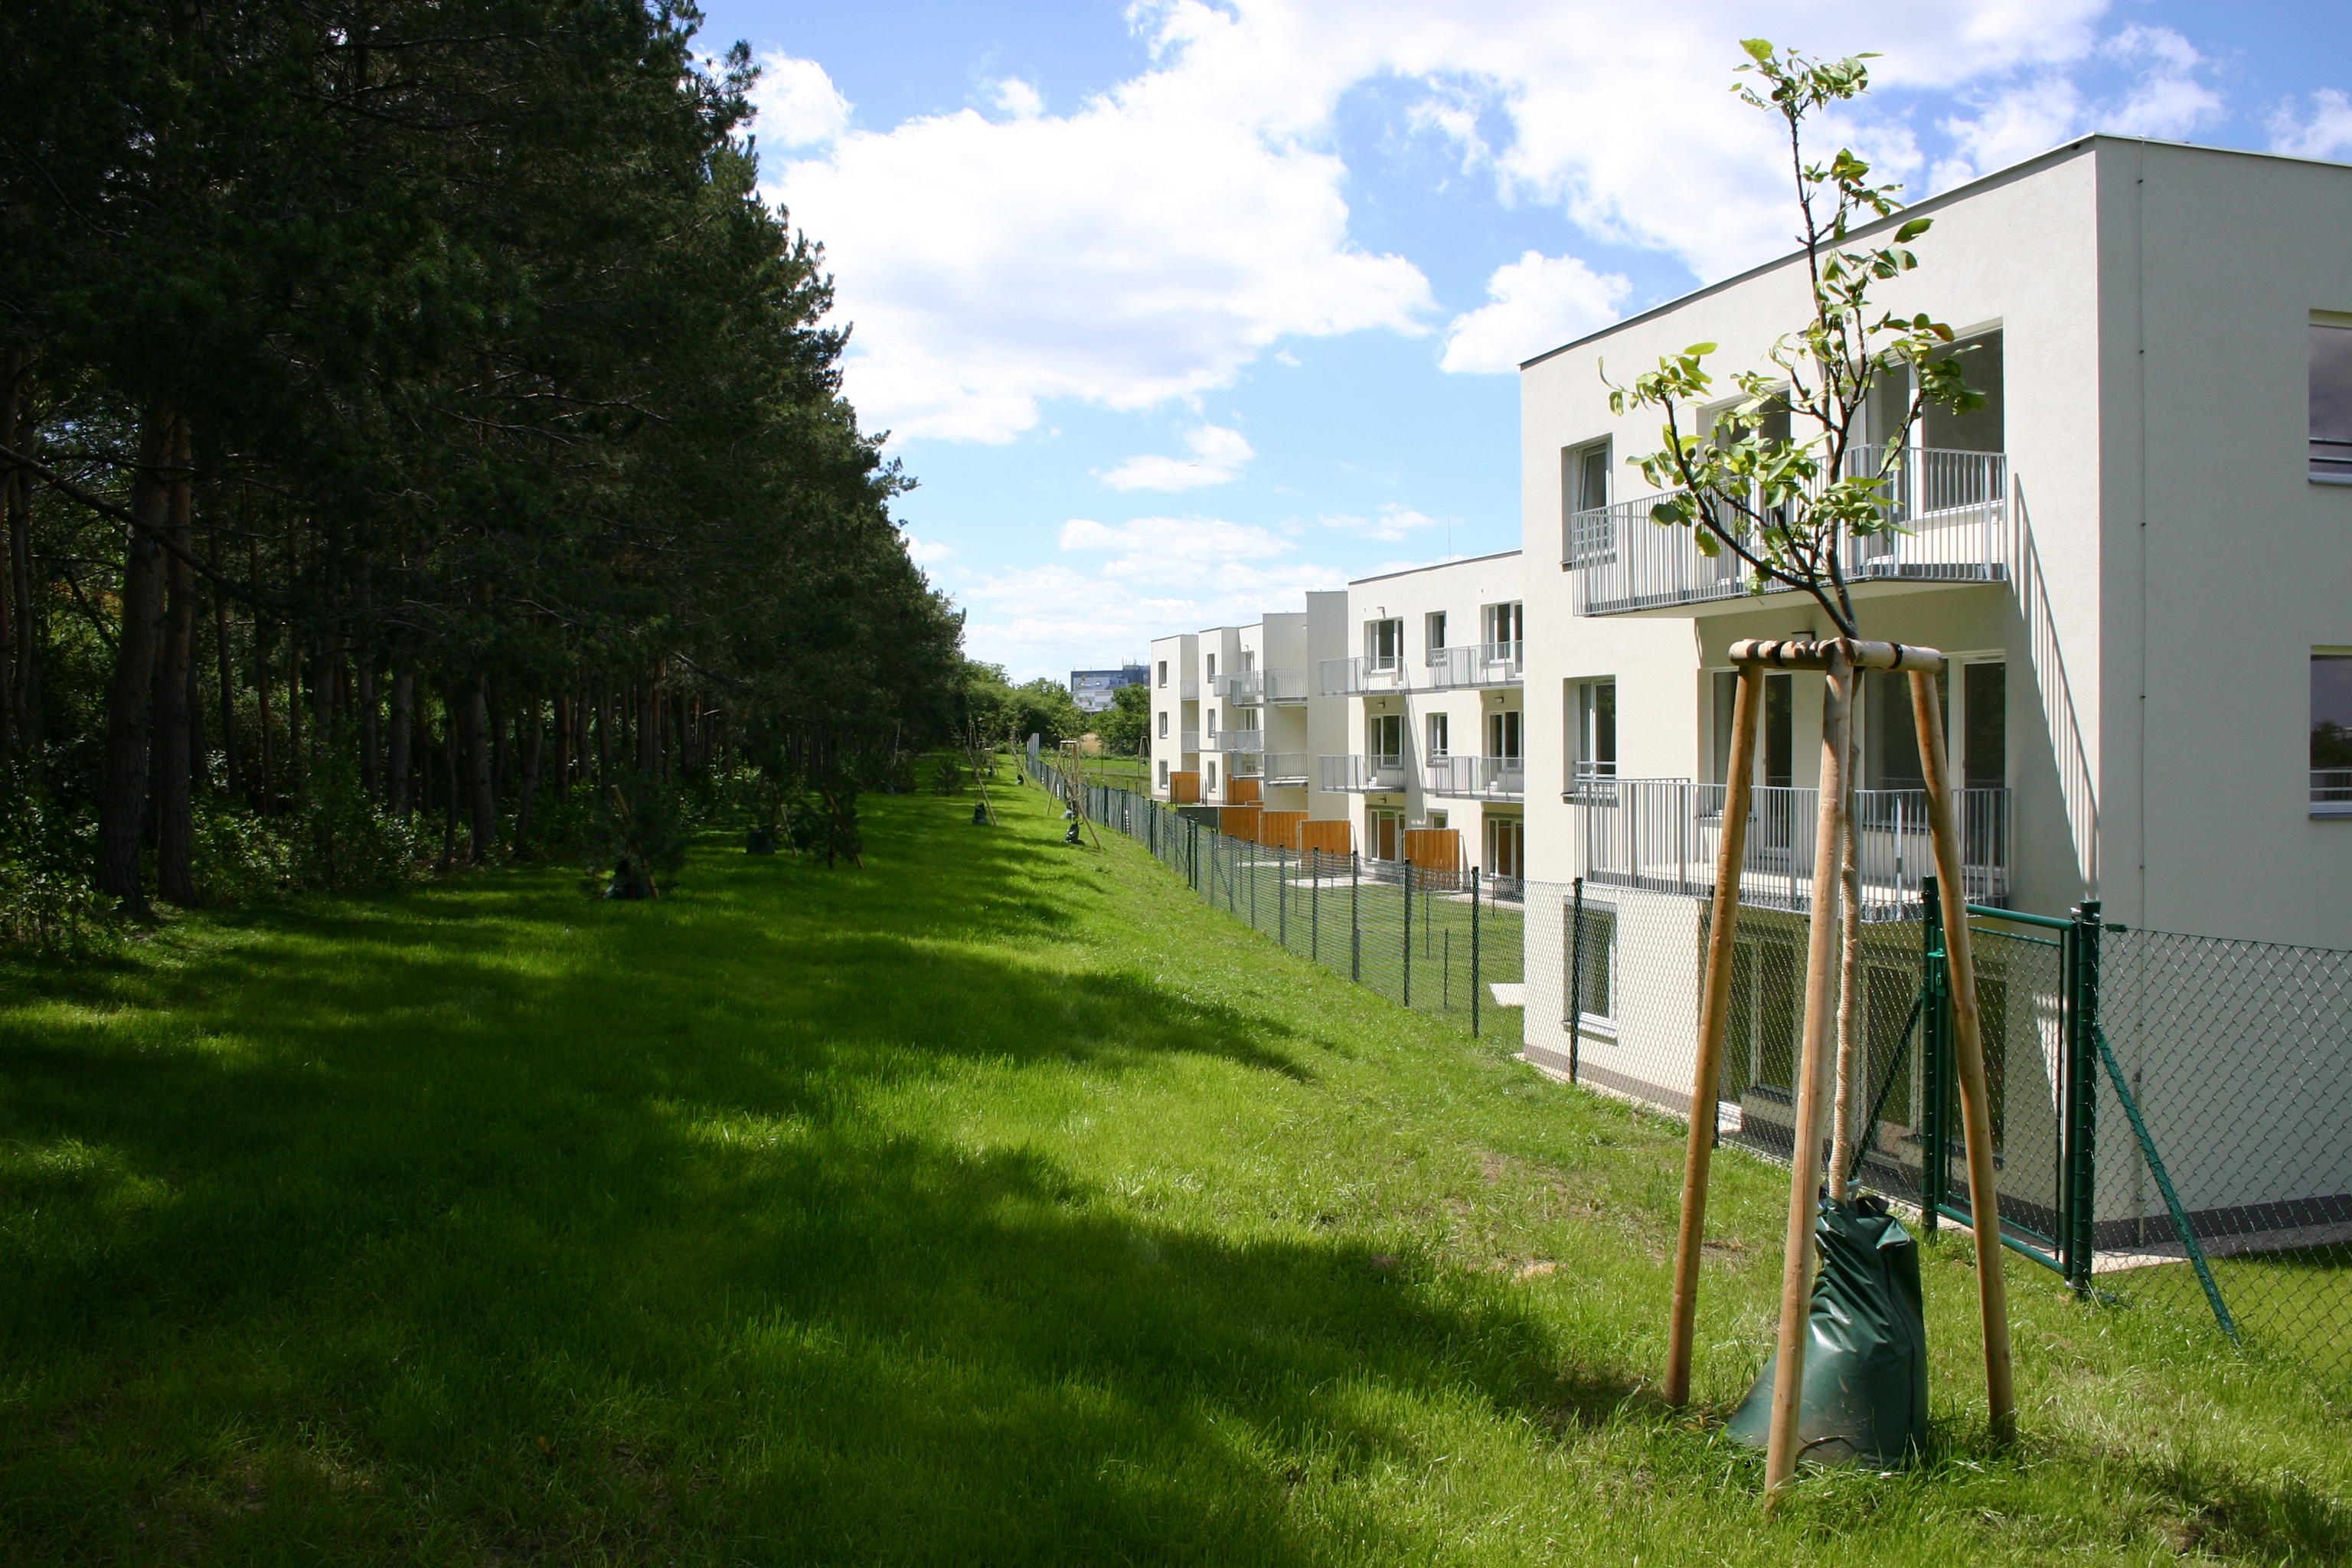 Rezidence Štěrboholy - Bygningskonstruksjon